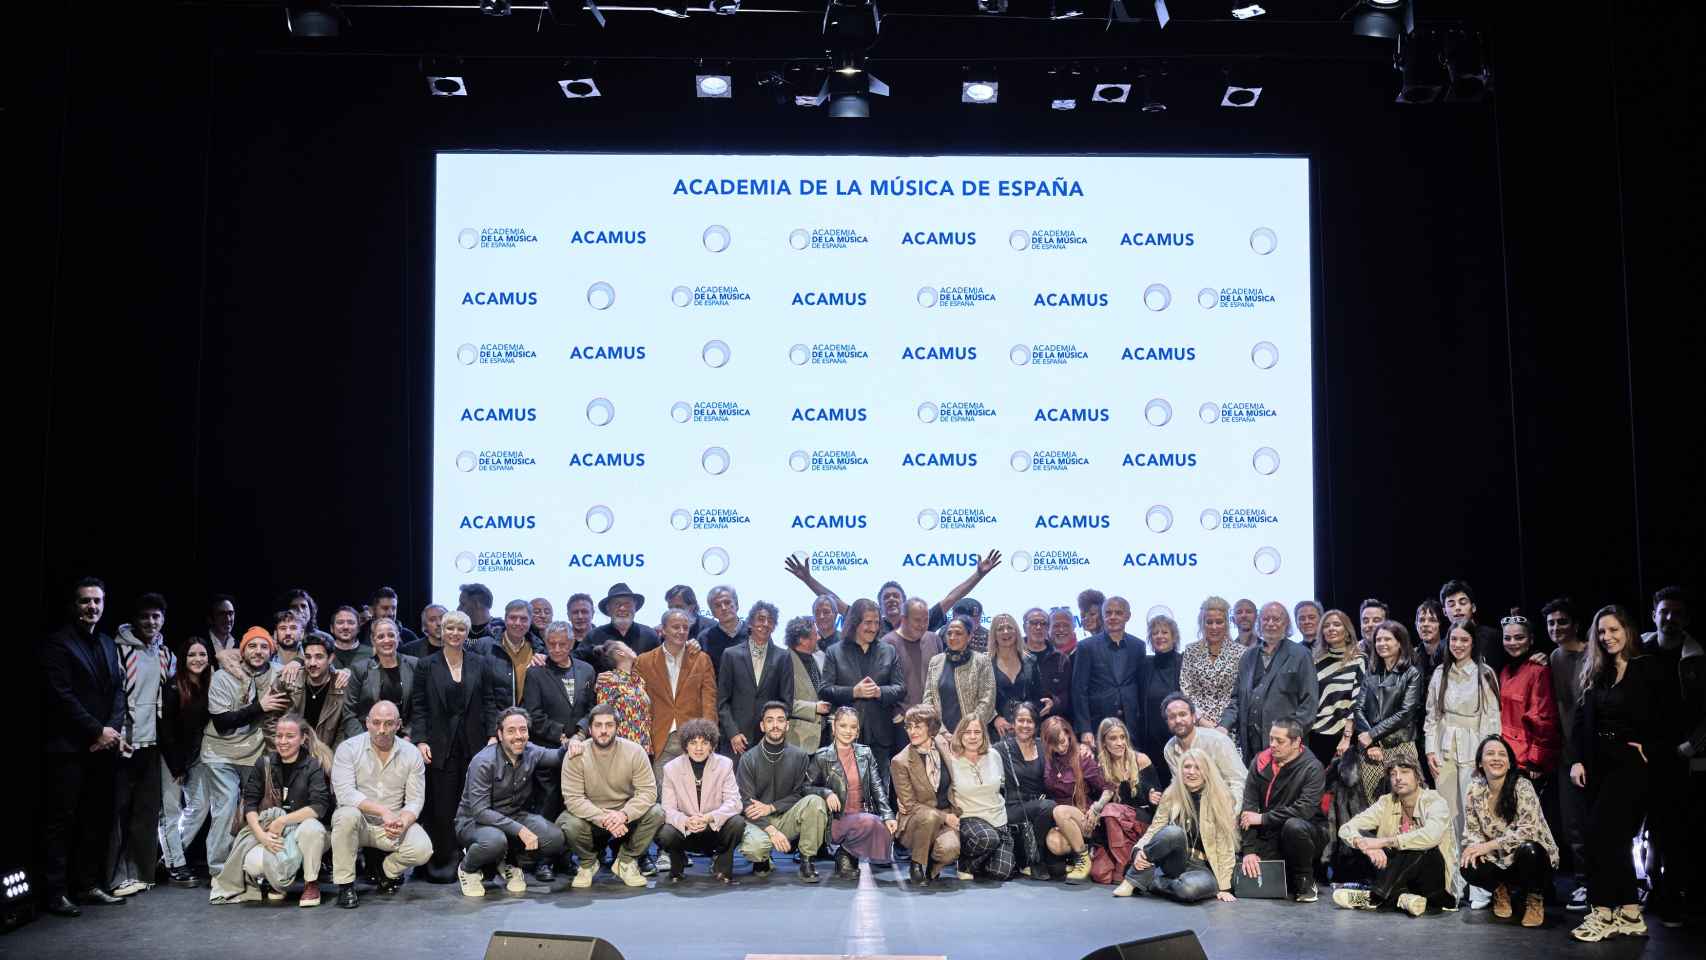 Foto de familia del acto de presentación de la Academia de la Música de España, este miércoles en el Círculo de Bellas Artes de Madrid. Foto: Pablo Llorente